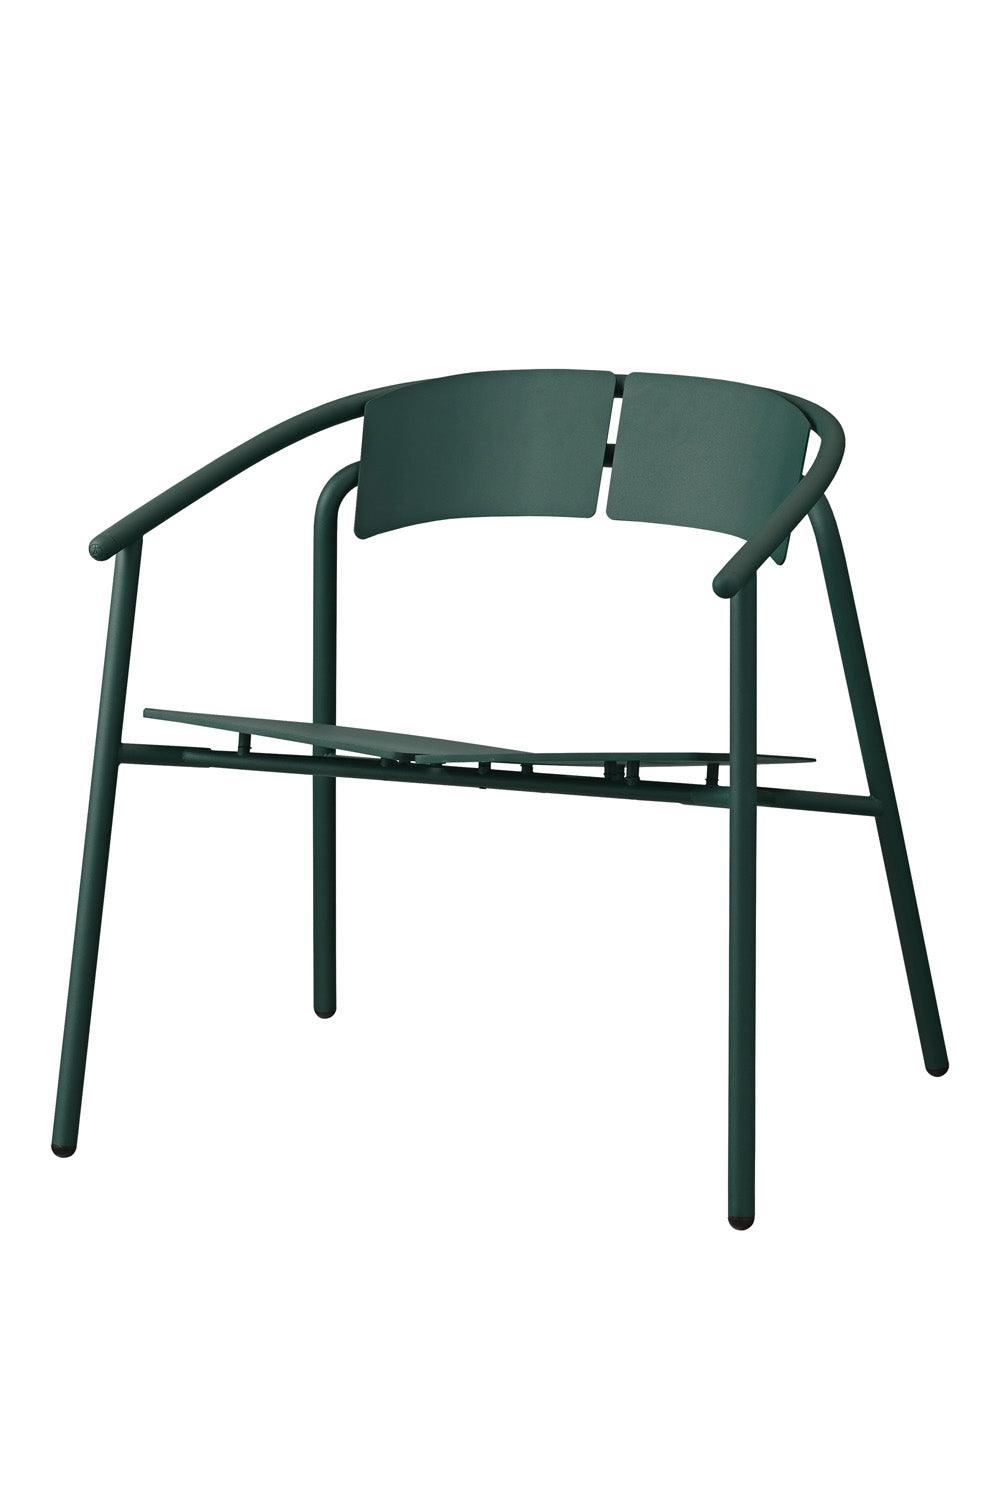 NOVO scaun lounge verde padure, L71,1xW68xH71,9 CM, AYTM - PARIS14A.RO